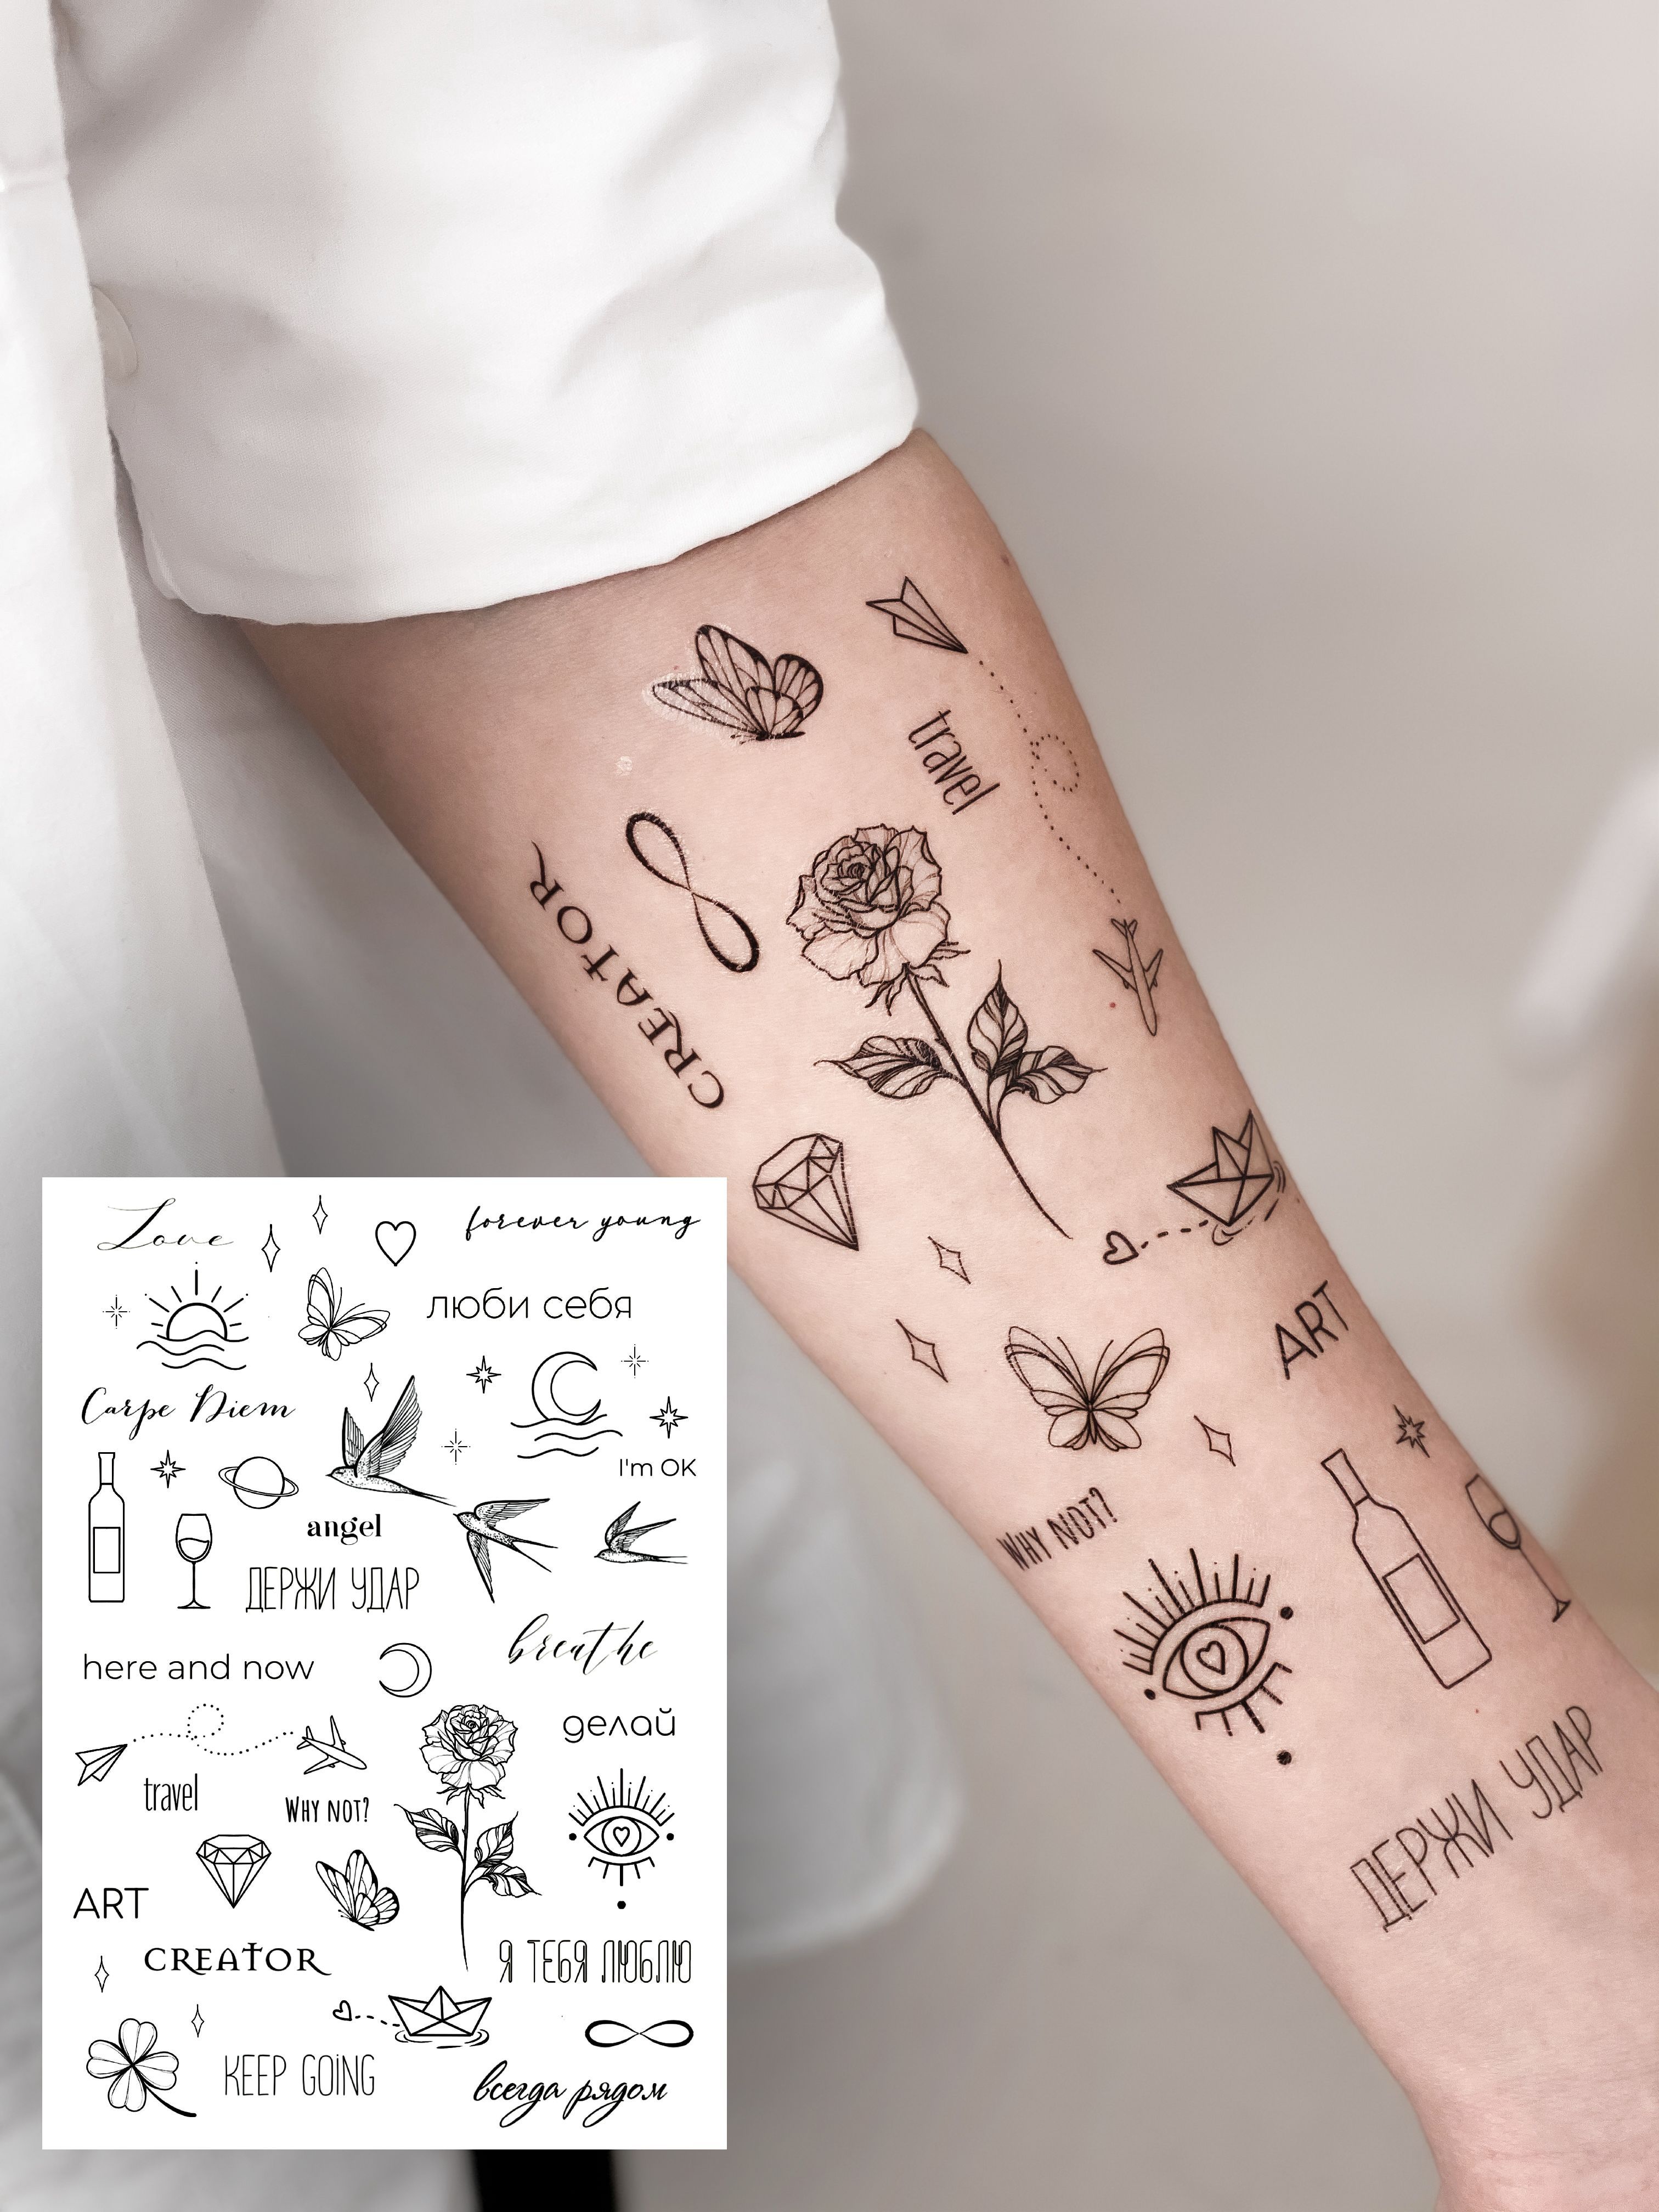 Ангел со мной: значение и символика татуировки на латыни